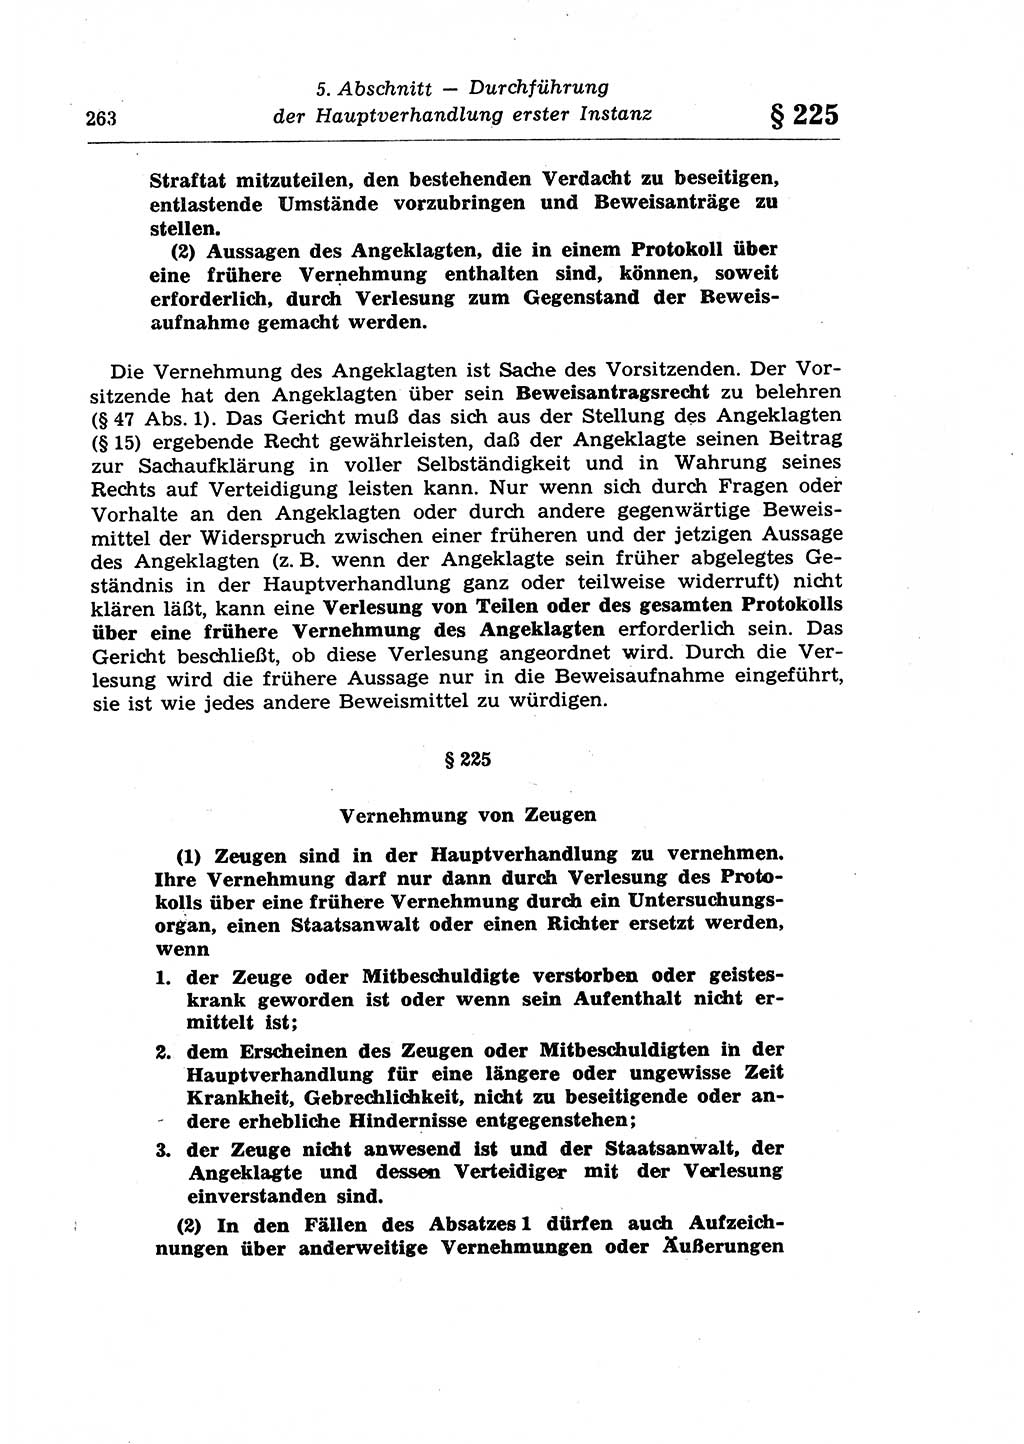 Strafprozeßrecht der DDR (Deutsche Demokratische Republik), Lehrkommentar zur Strafprozeßordnung (StPO) 1968, Seite 263 (Strafprozeßr. DDR Lehrkomm. StPO 19688, S. 263)